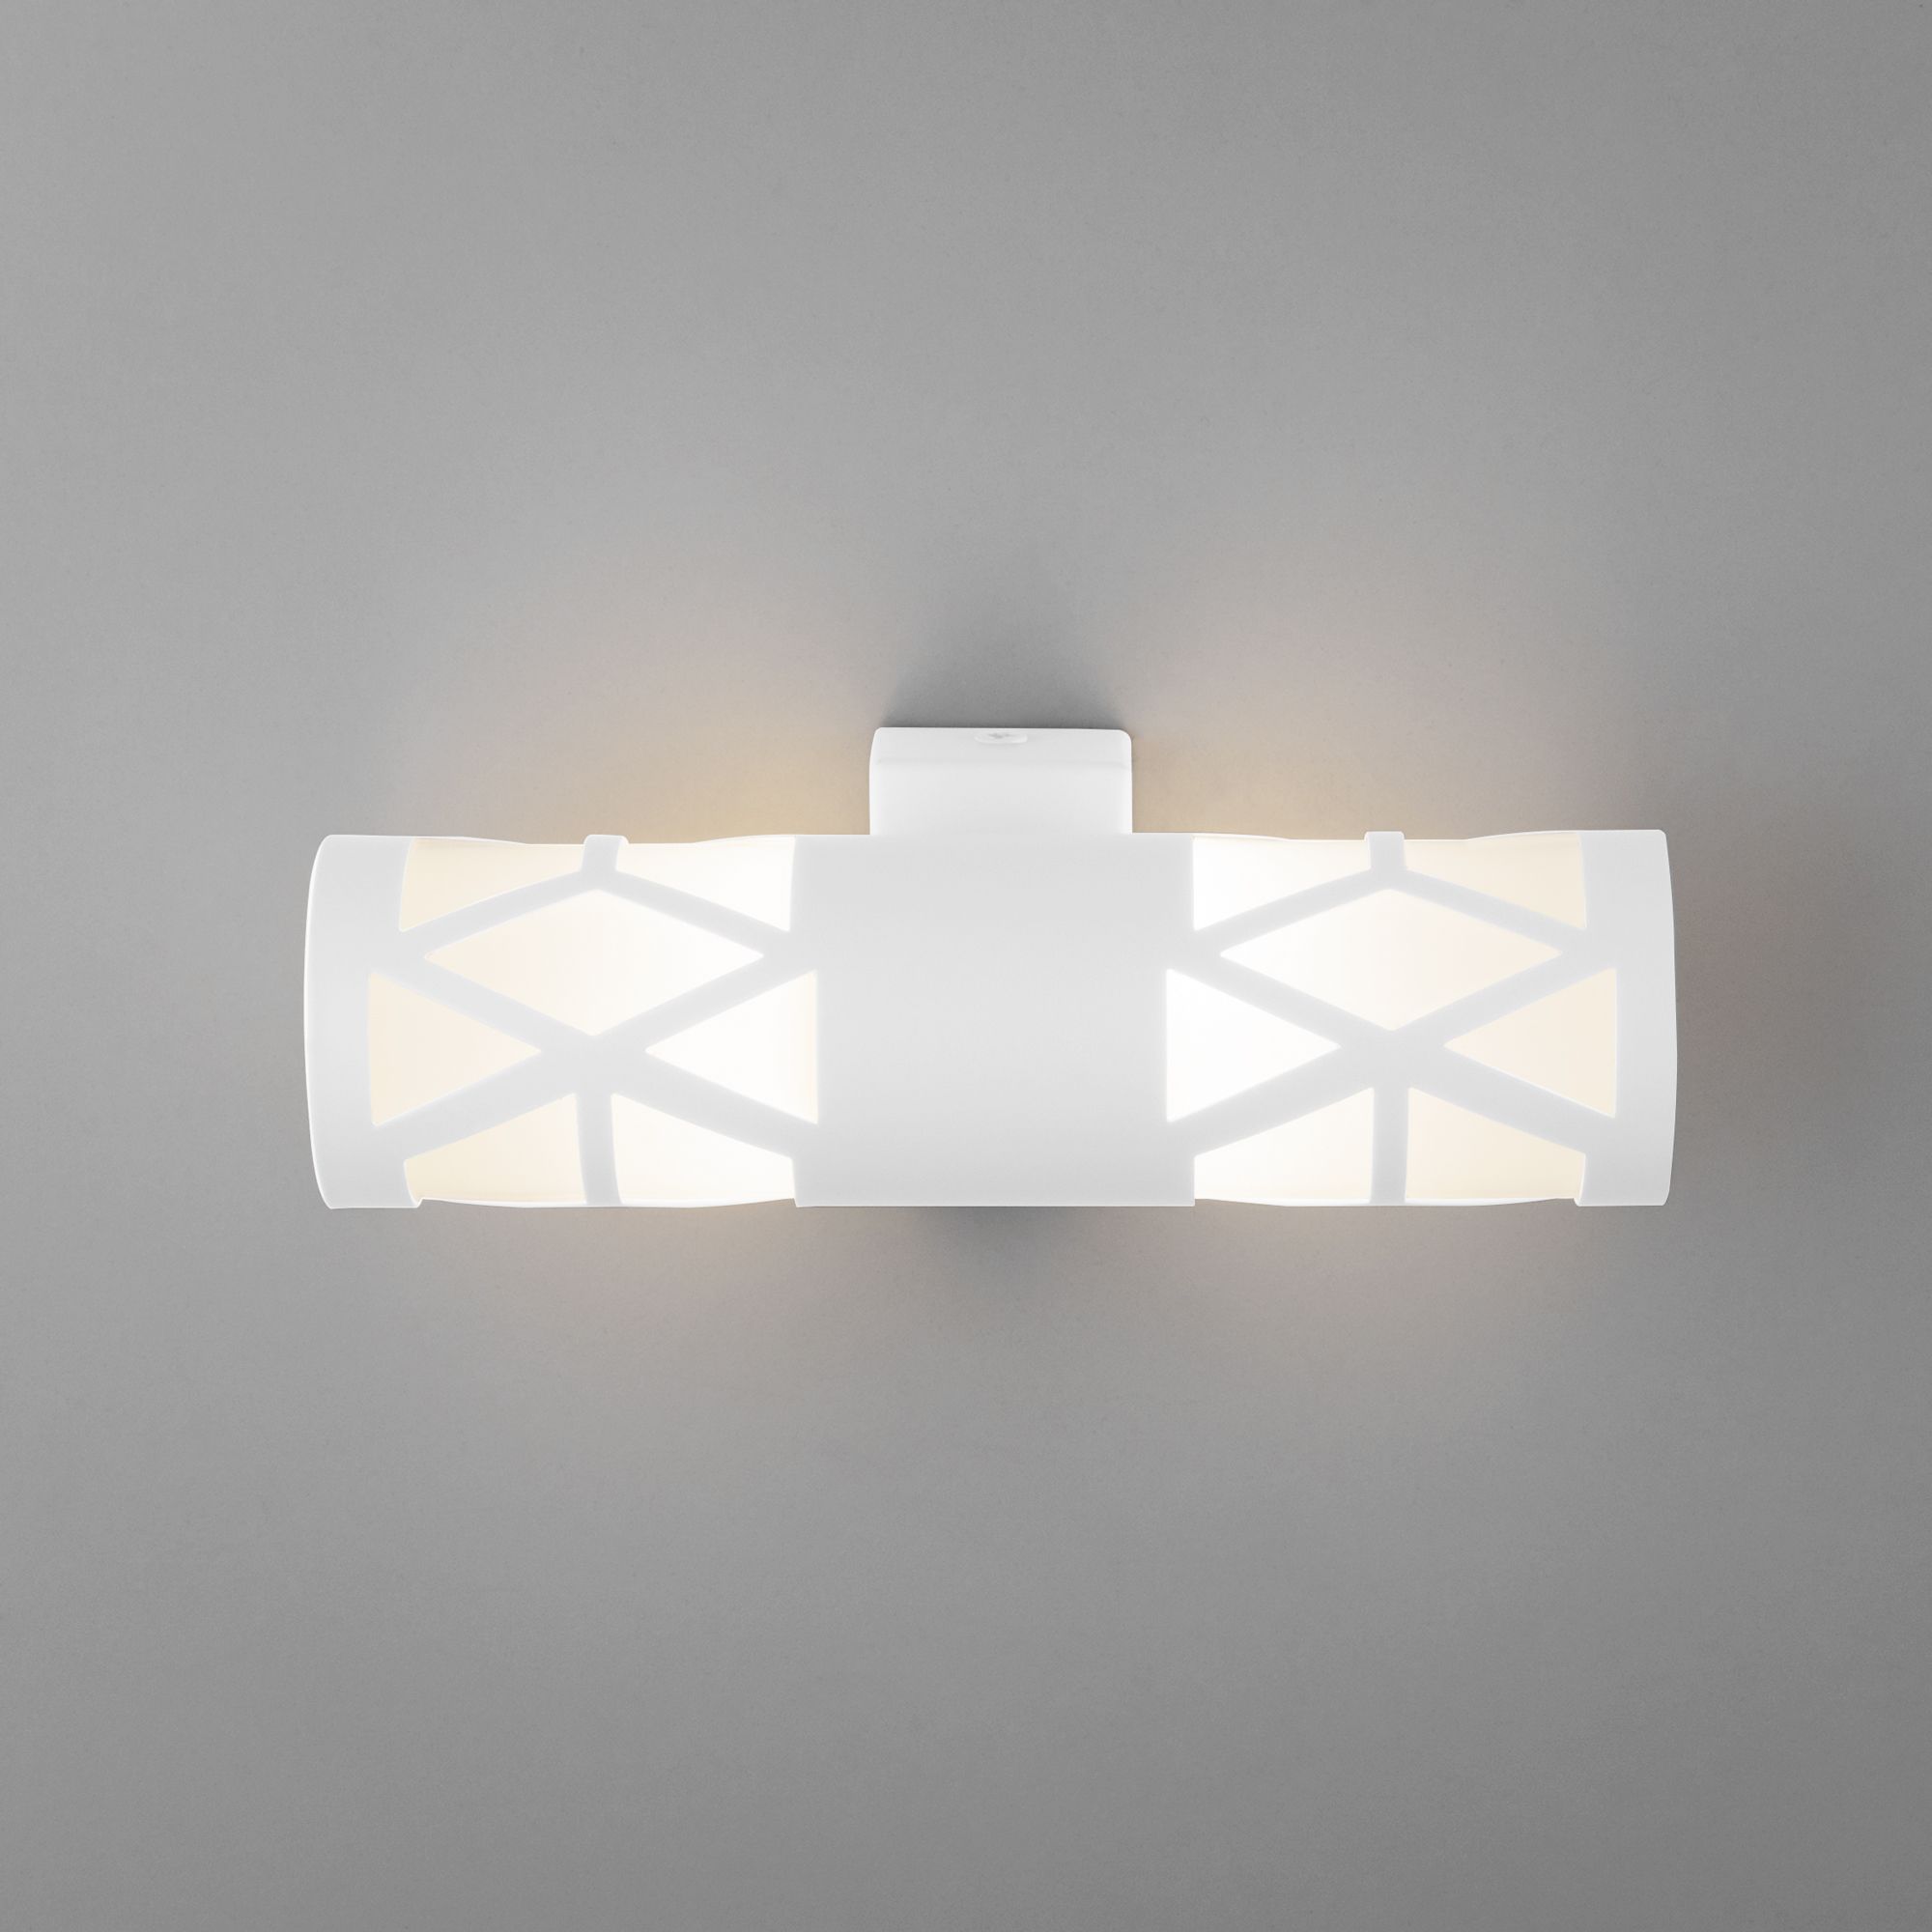 Настенный светодиодный светильник Fanc LED Elektrostandard Fanc MRL LED 1023 белый. Фото 2